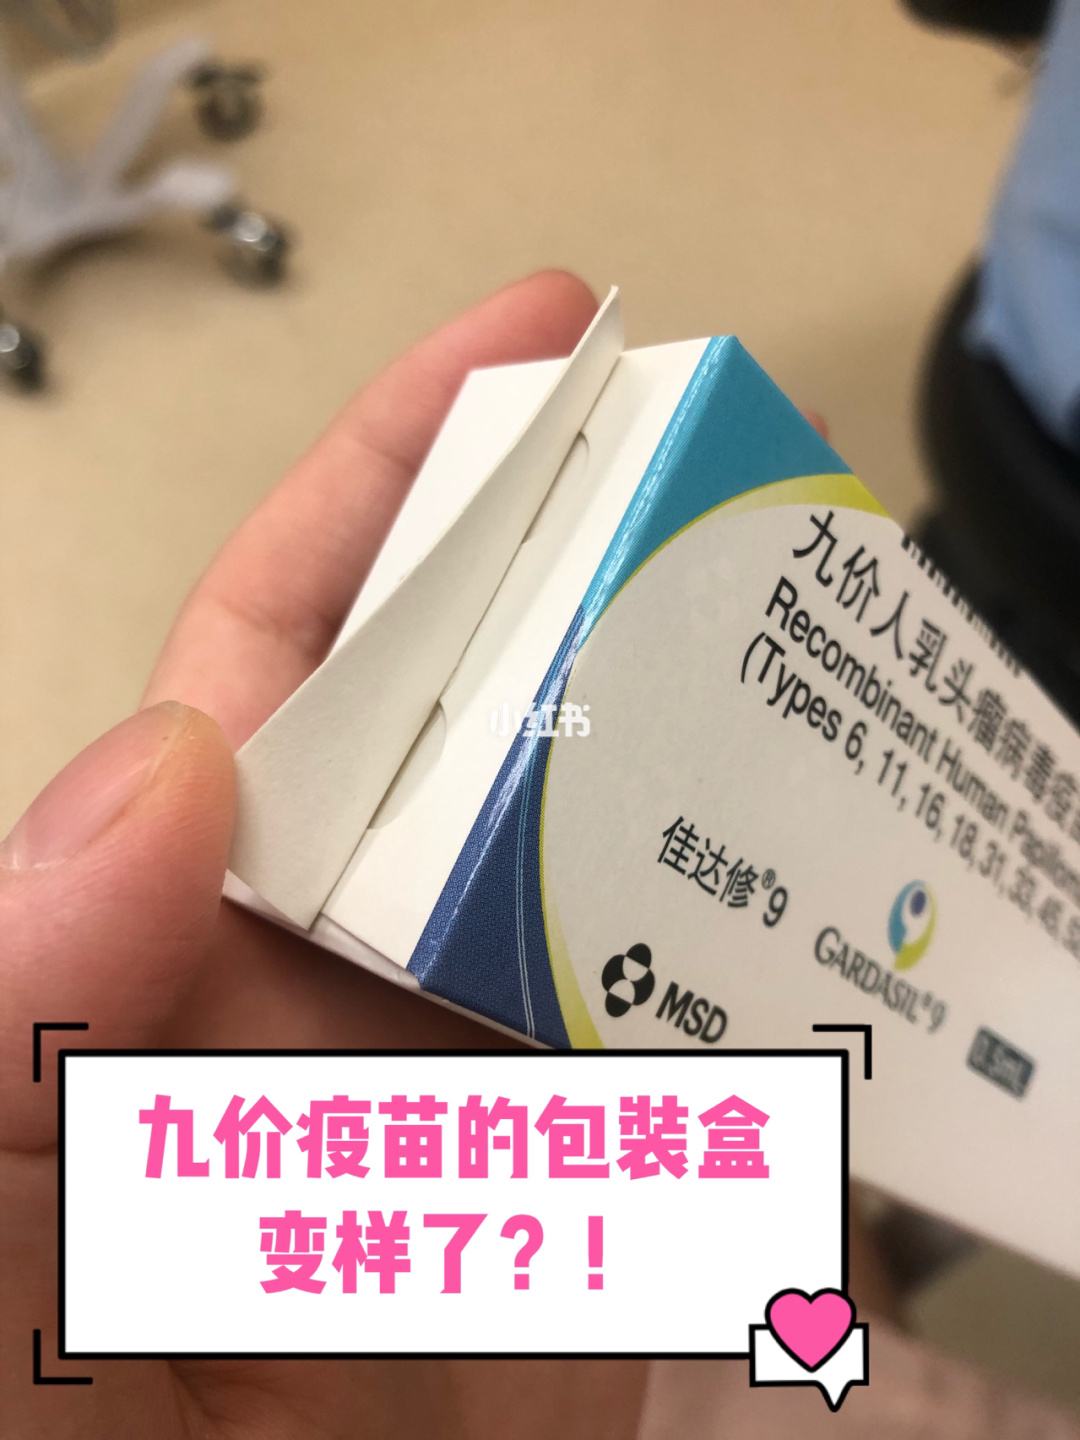 北京大学国际医院4价9价疫苗帮忙预约挂号